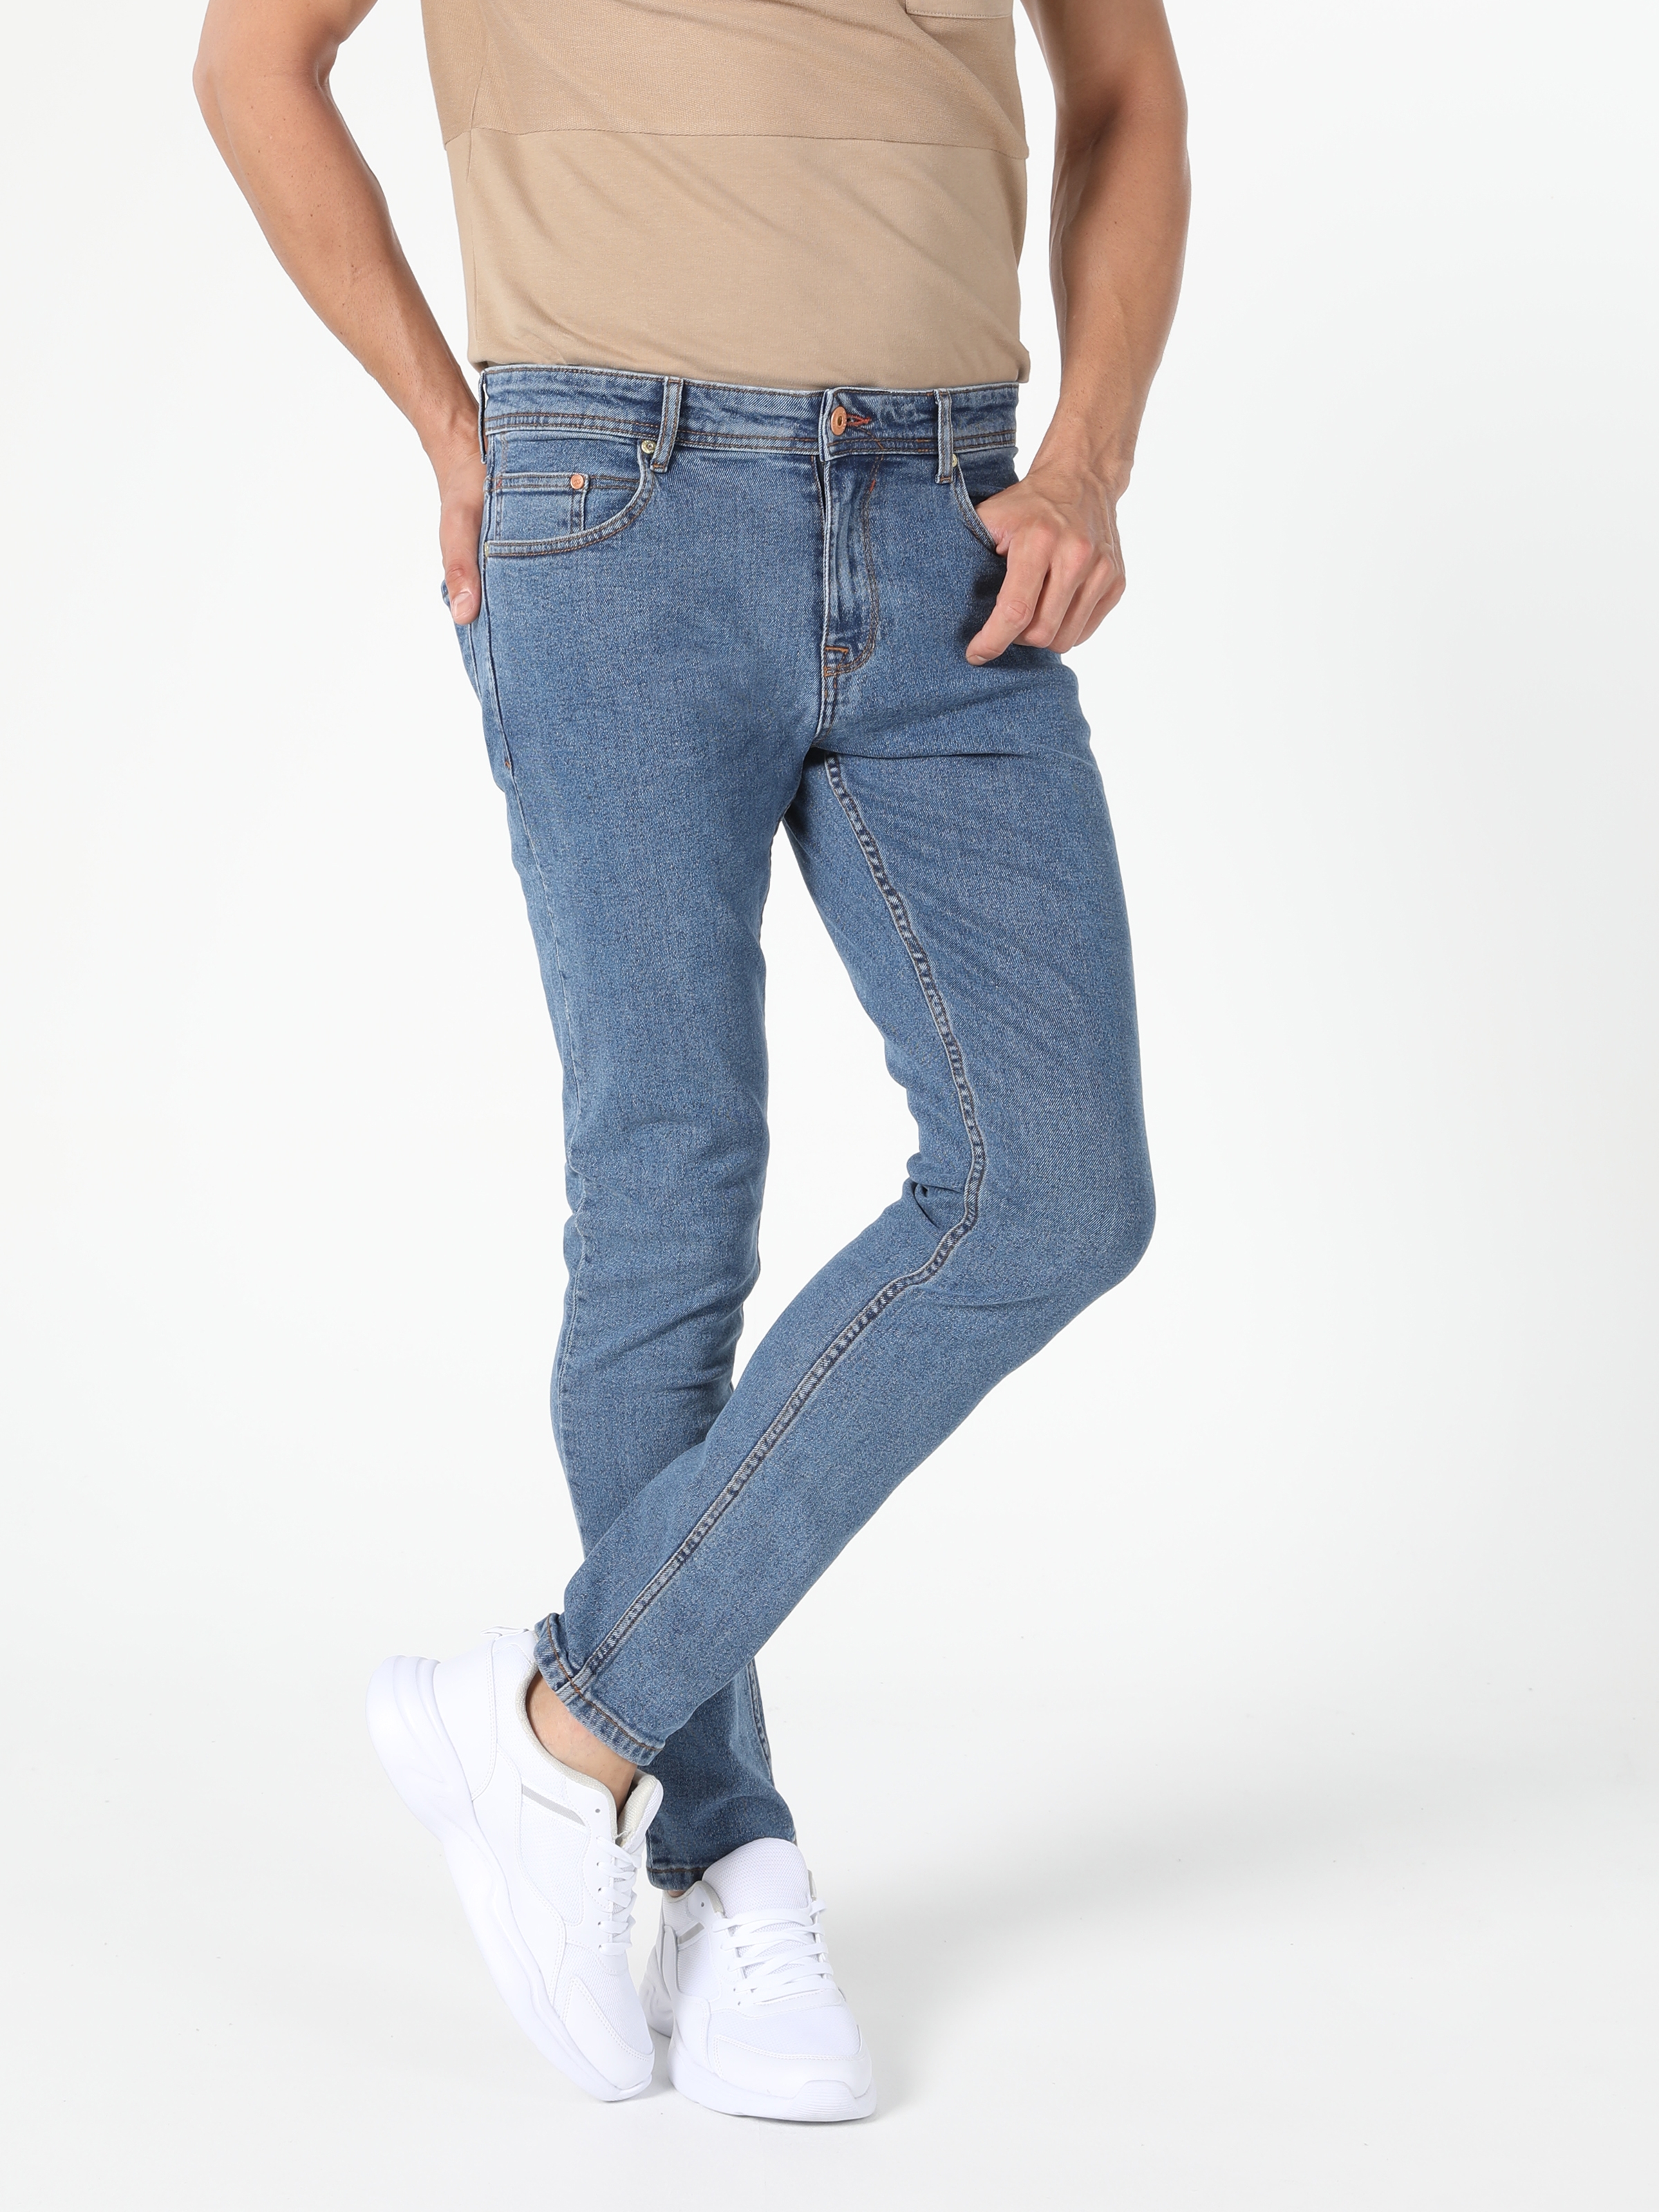 Afișați detalii pentru Pantaloni De Barbati Denim Slim Fit 041 DANNY